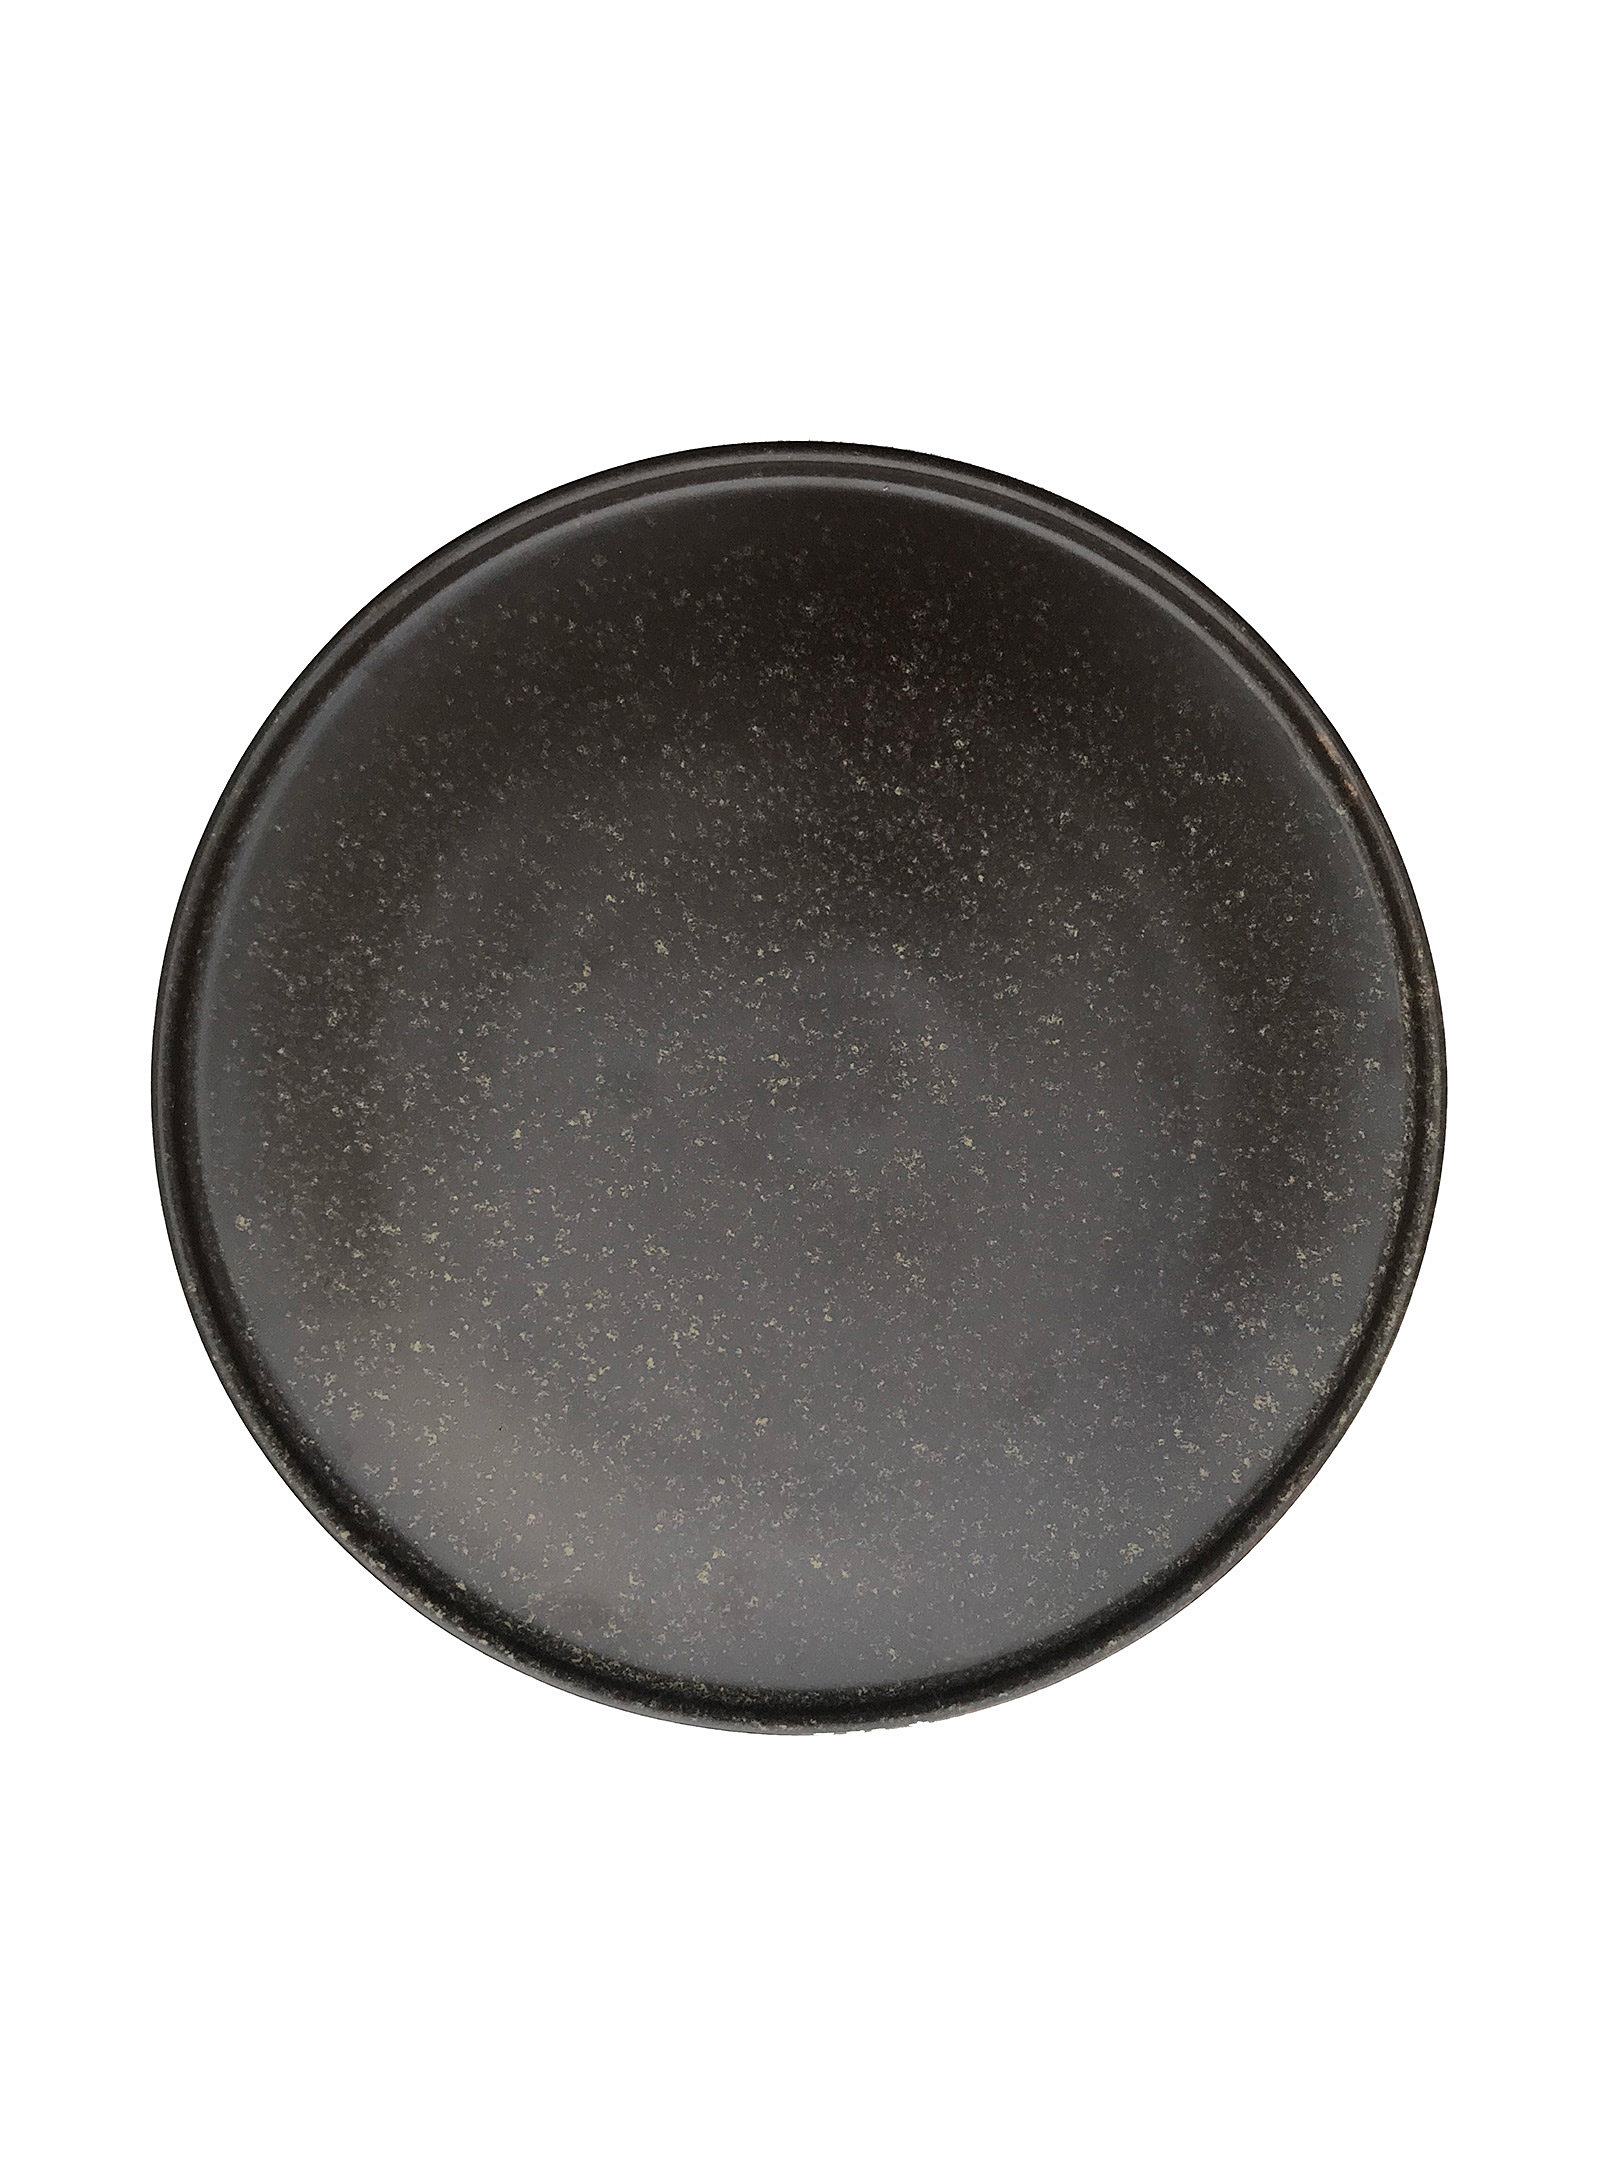 Oyoy Living Design Speckled Porcelain Plates Set Of 2 In Dark Brown